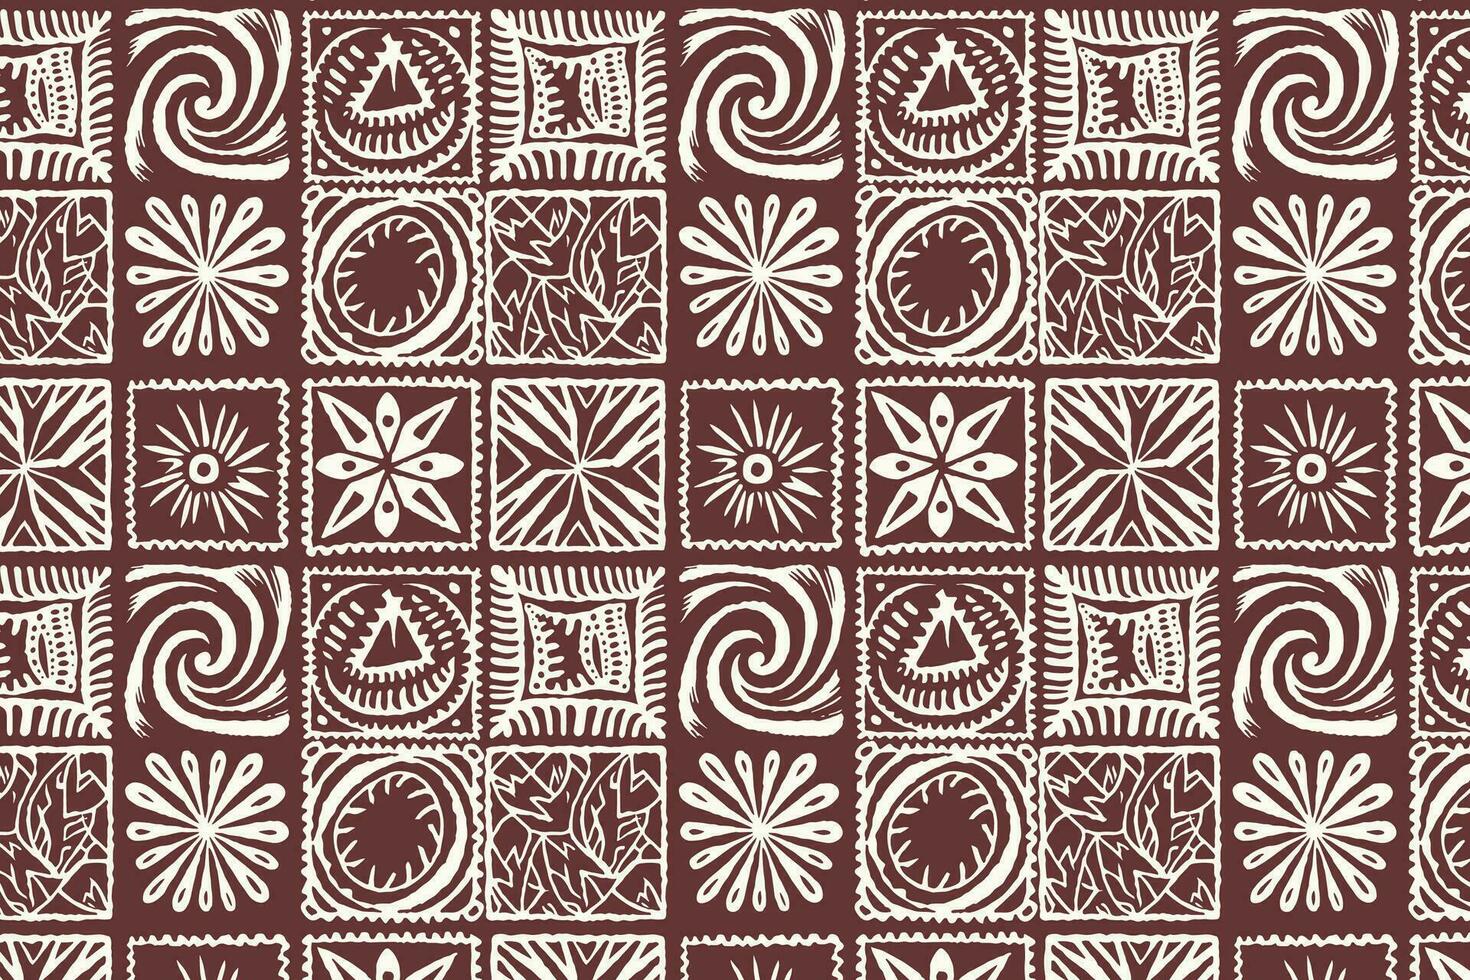 kastanienbraun und Weiß geometrisch Muster mit Blumen- und Stammes- Elemente vektor